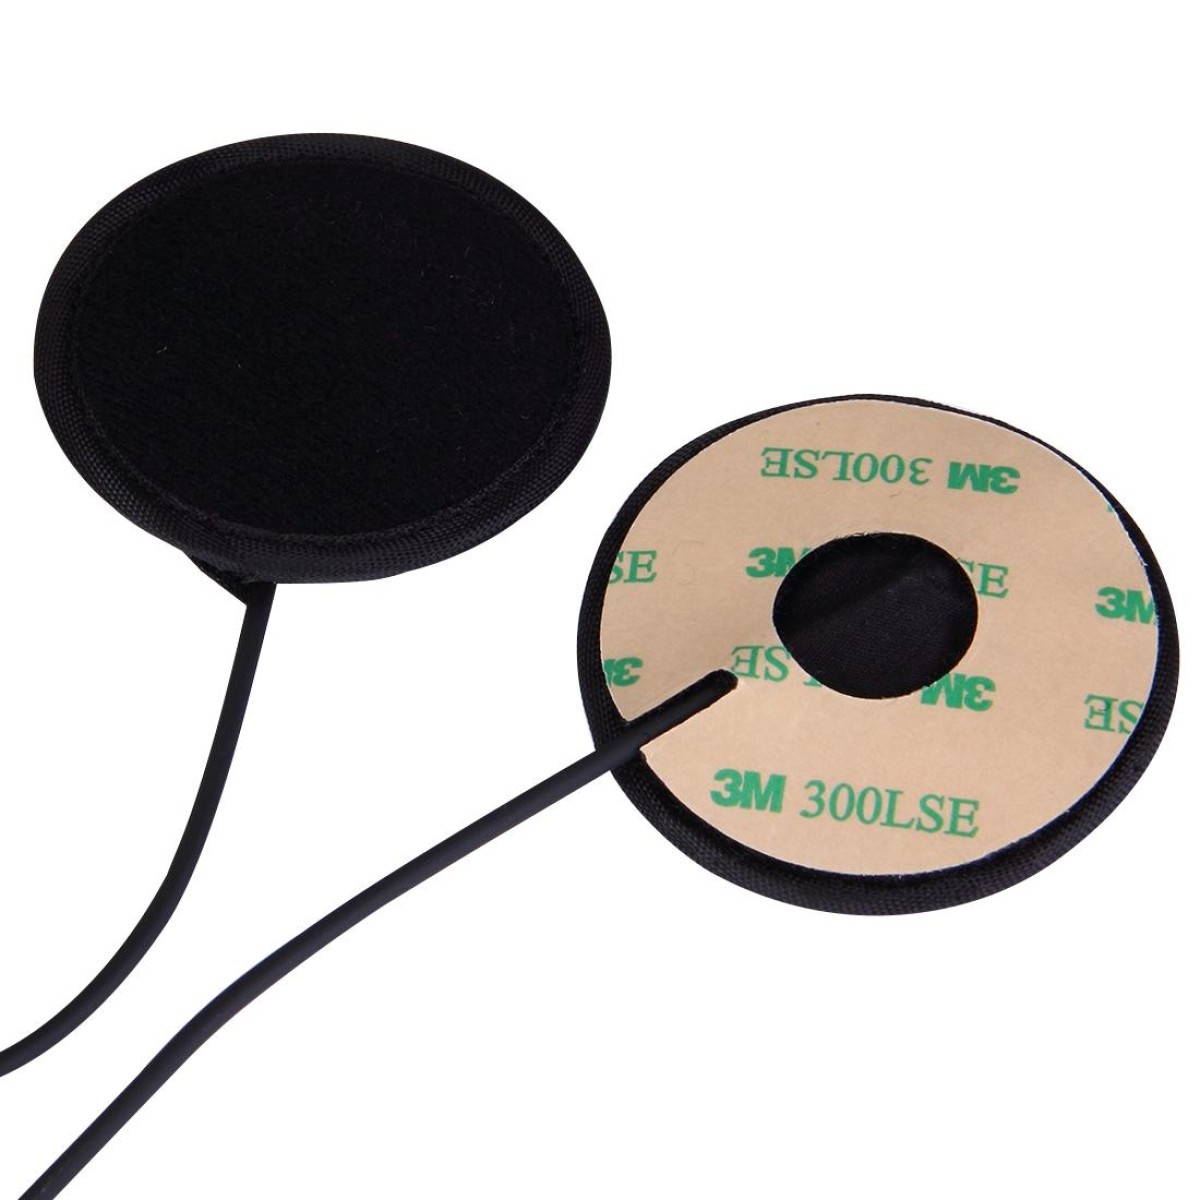 2 Pin PTT Adjustable Volume Motorcycle Helmet Headset Microphone for BAOFENG Radio Walkie Talkie